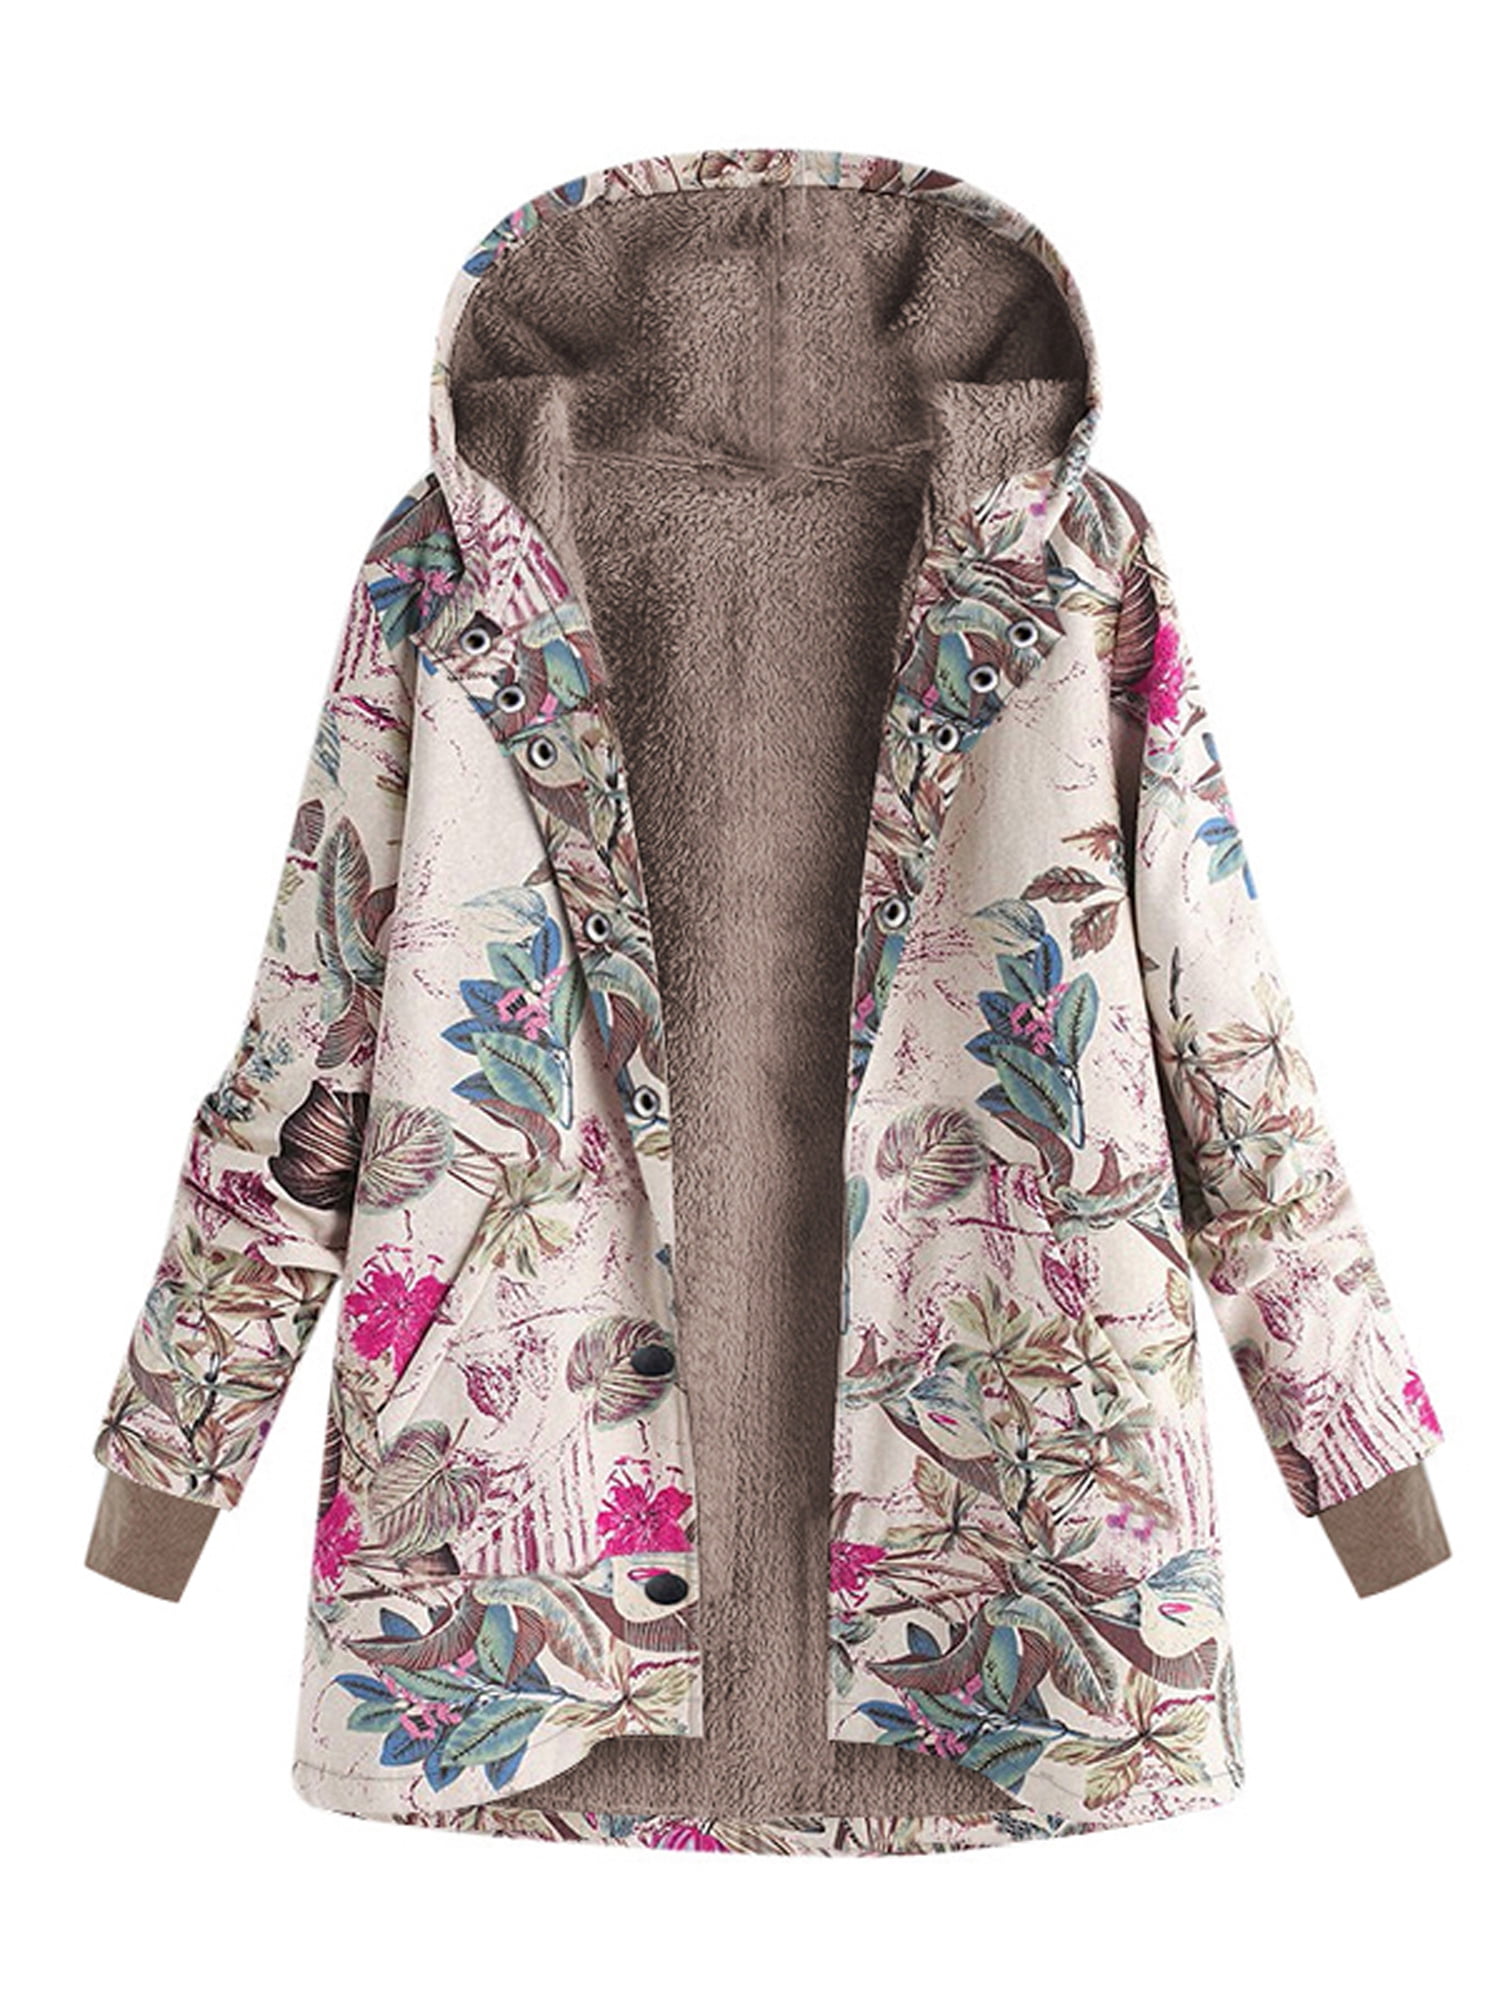 Women Winter Warm Fleece Lined Hooded Jacket Parka Floral Coat Jacket Outwear